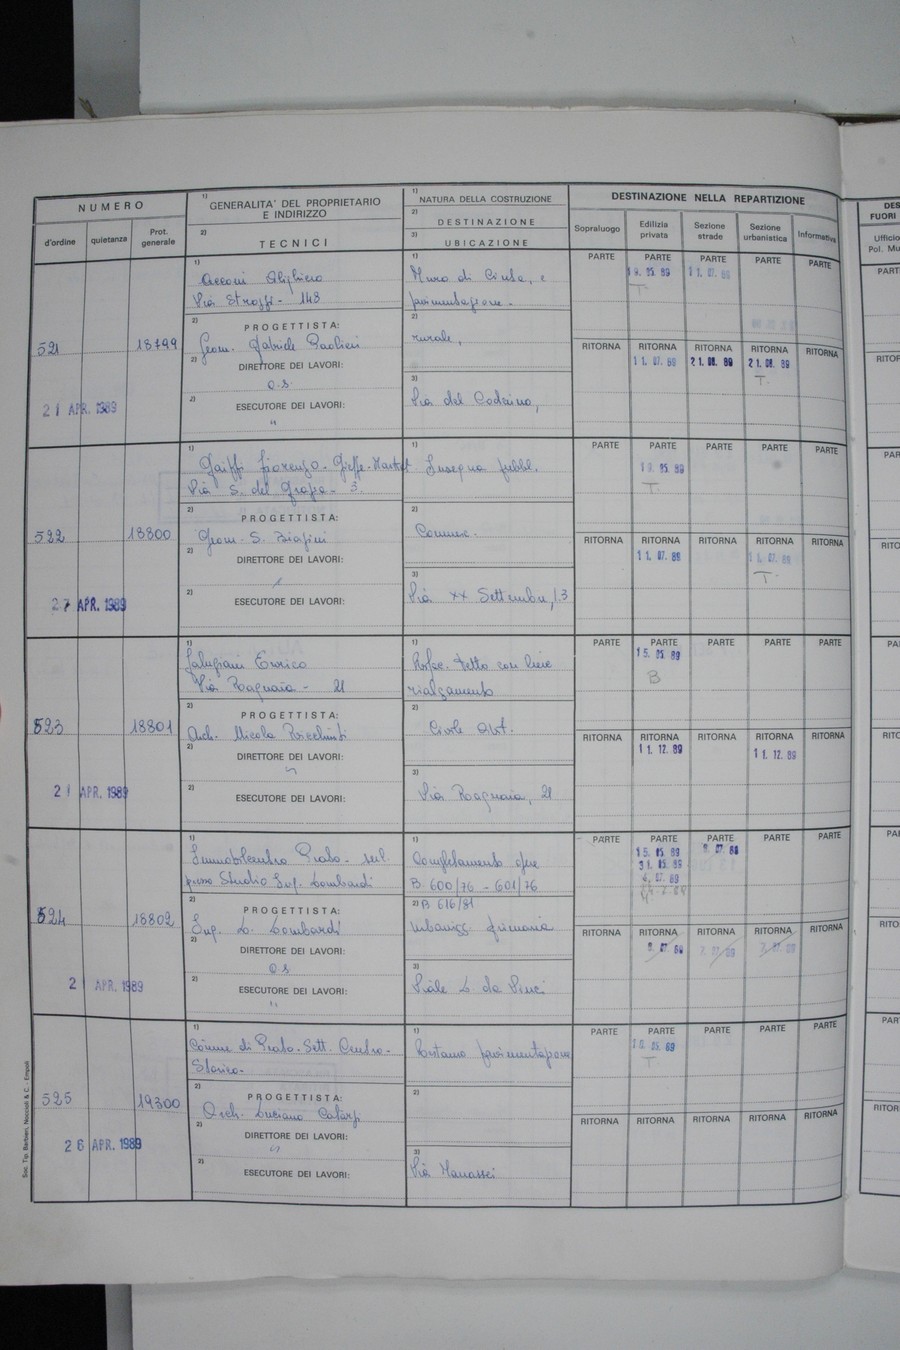 Foto del lato sinistro del registro con i dati della pratica 524/1989